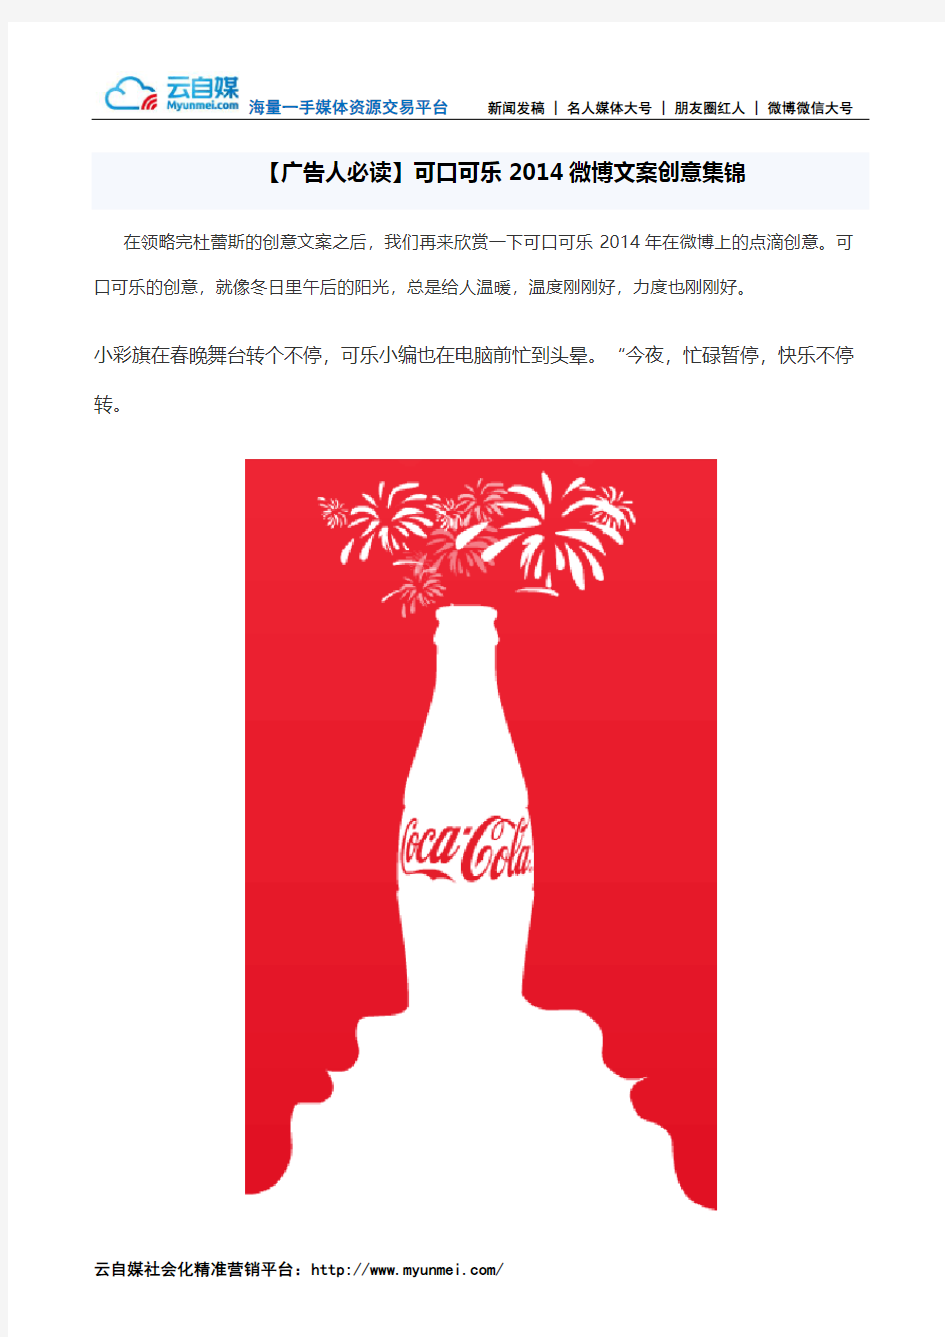 【广告人必读】可口可乐2014微博文案创意集锦